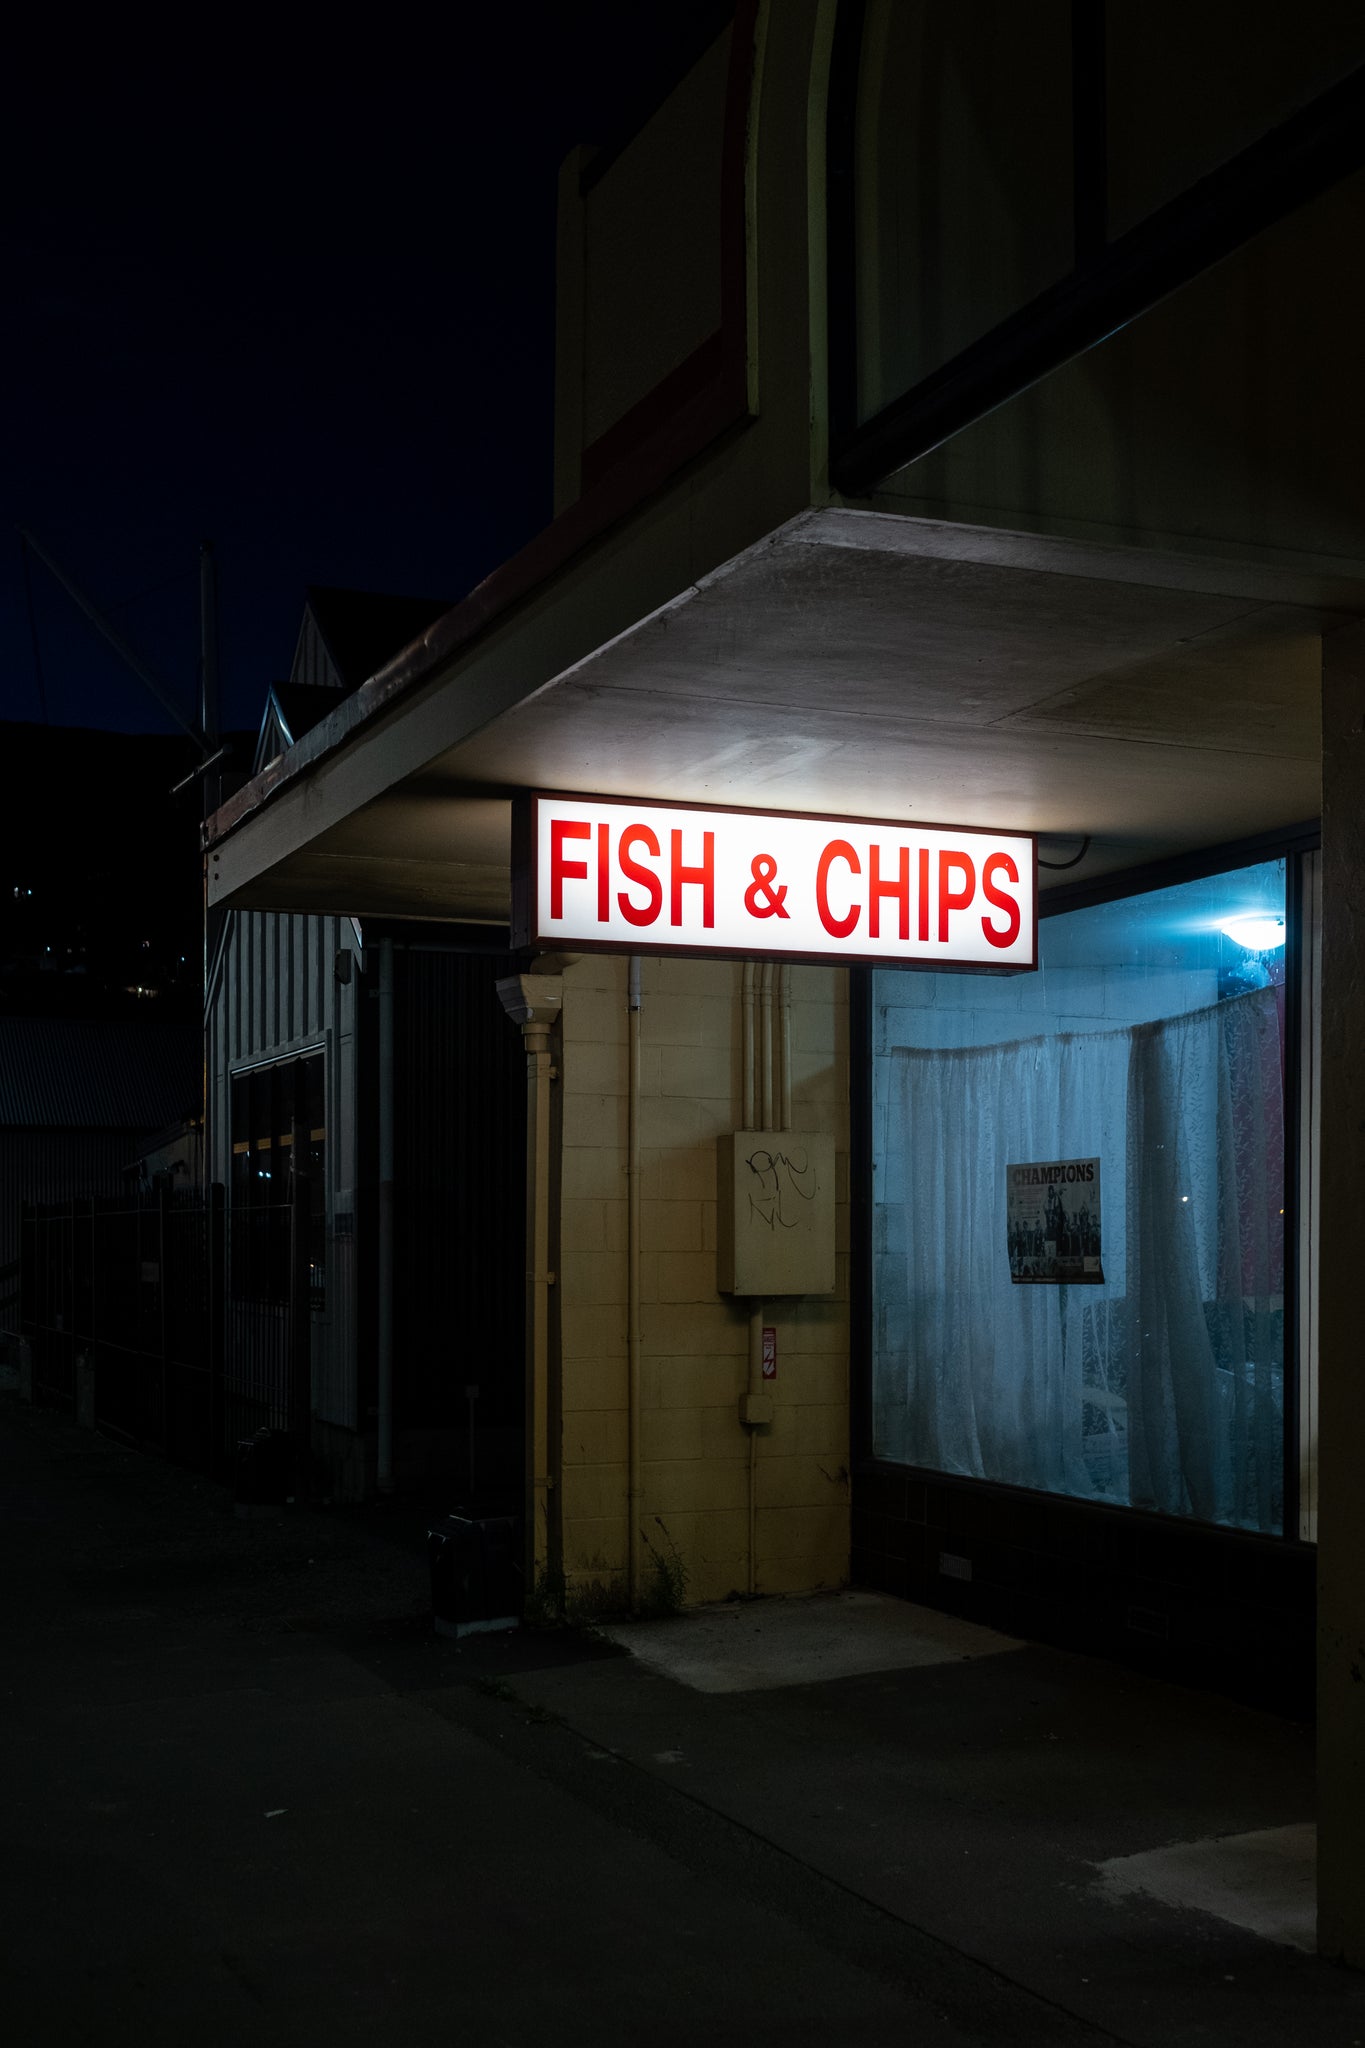 Fish and Chip shop, at closing. Dark black night sky. Fish and Chips illuminated. 